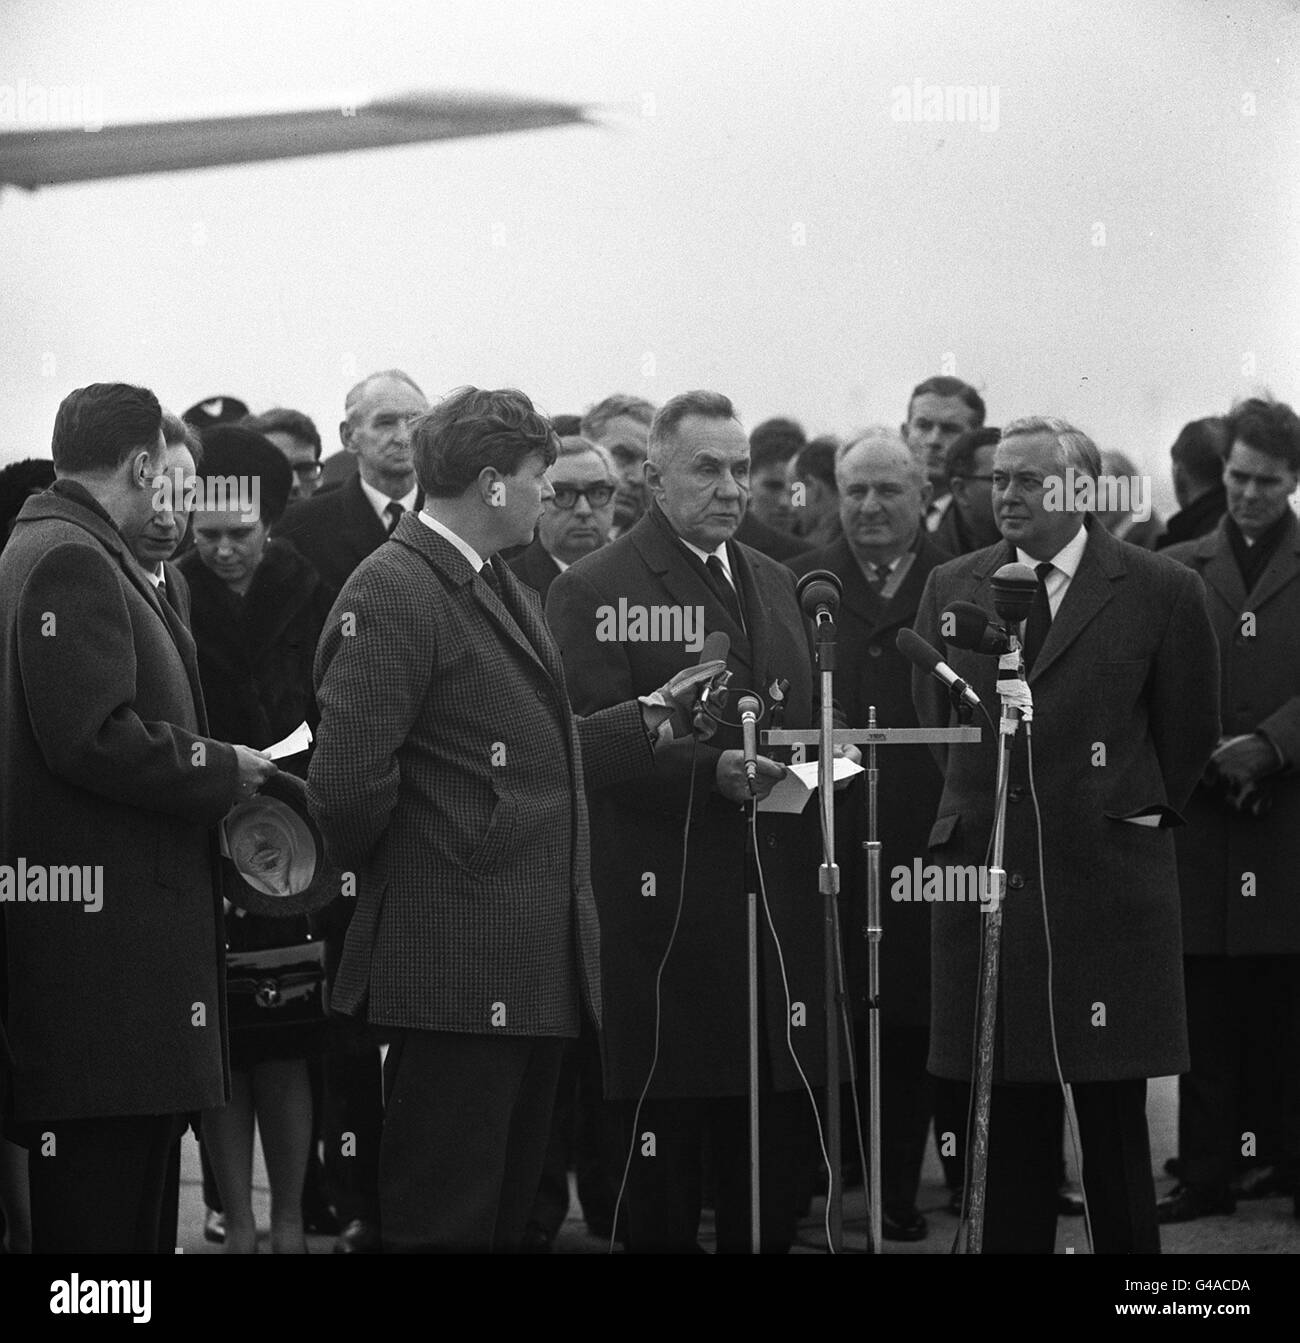 20/02/1980: Gestorben an diesem Tag begrüßt der ehemalige sowjetische Premierminister Alexi Kosygin, HERR HAROLD WILSON (RECHTS), HERRN ALEXEI KOSYGIN, DEN SOWJETISCHEN PREMIERMINISTER, HEUTE AUF DEM LONDONER FLUGHAFEN HEATHROW ZU EINEM OFFIZIELLEN BESUCH IN GROSSBRITANNIEN. (MITTE) AUSSENMINISTER GEORGE BROWN Stockfoto